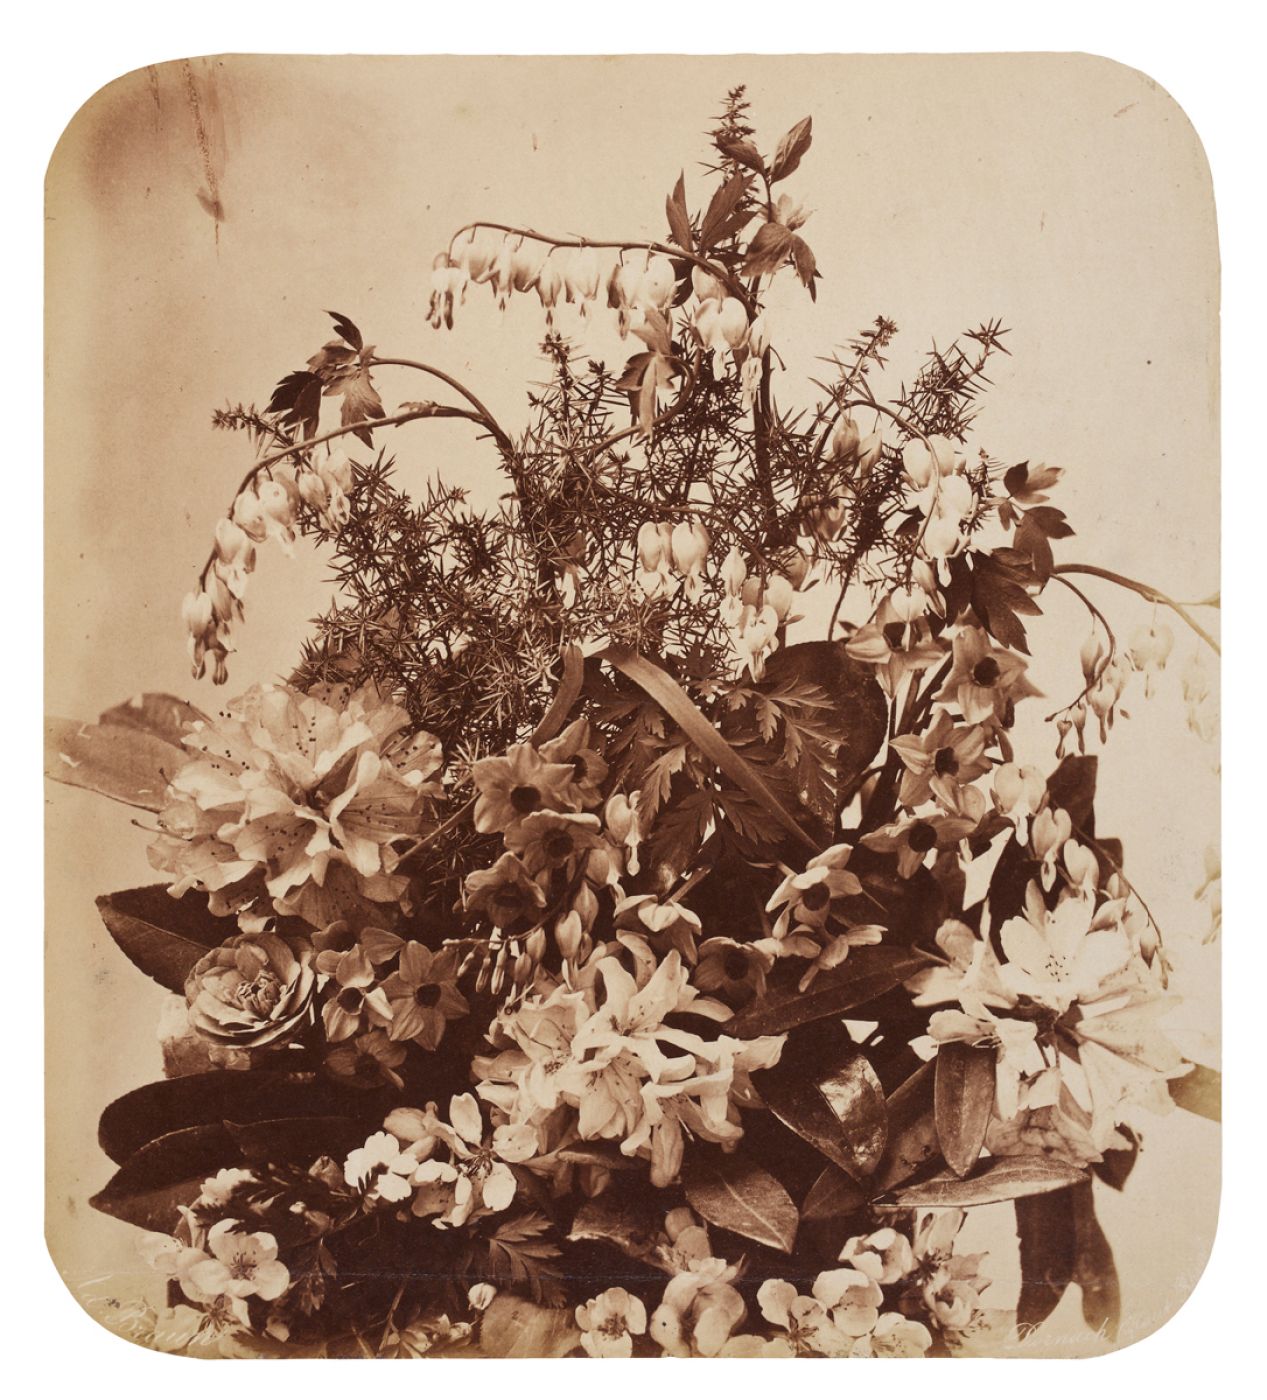 Adolphe Braun, “Bouquet de fleurs”, 1855 ca.